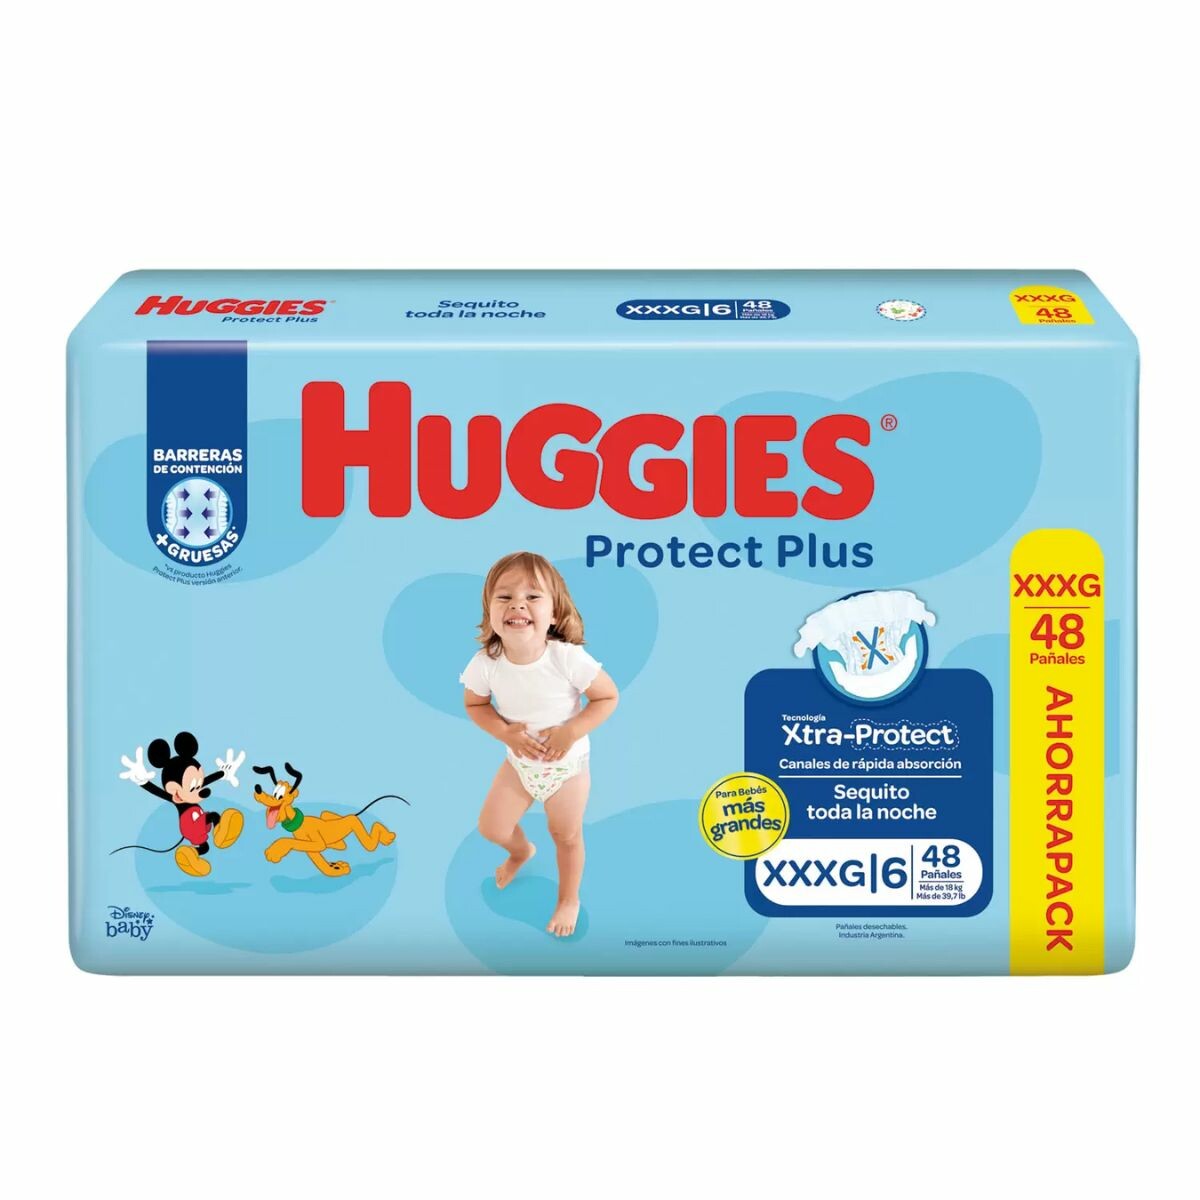 Huggies protect plus XXXG x 48 unidades